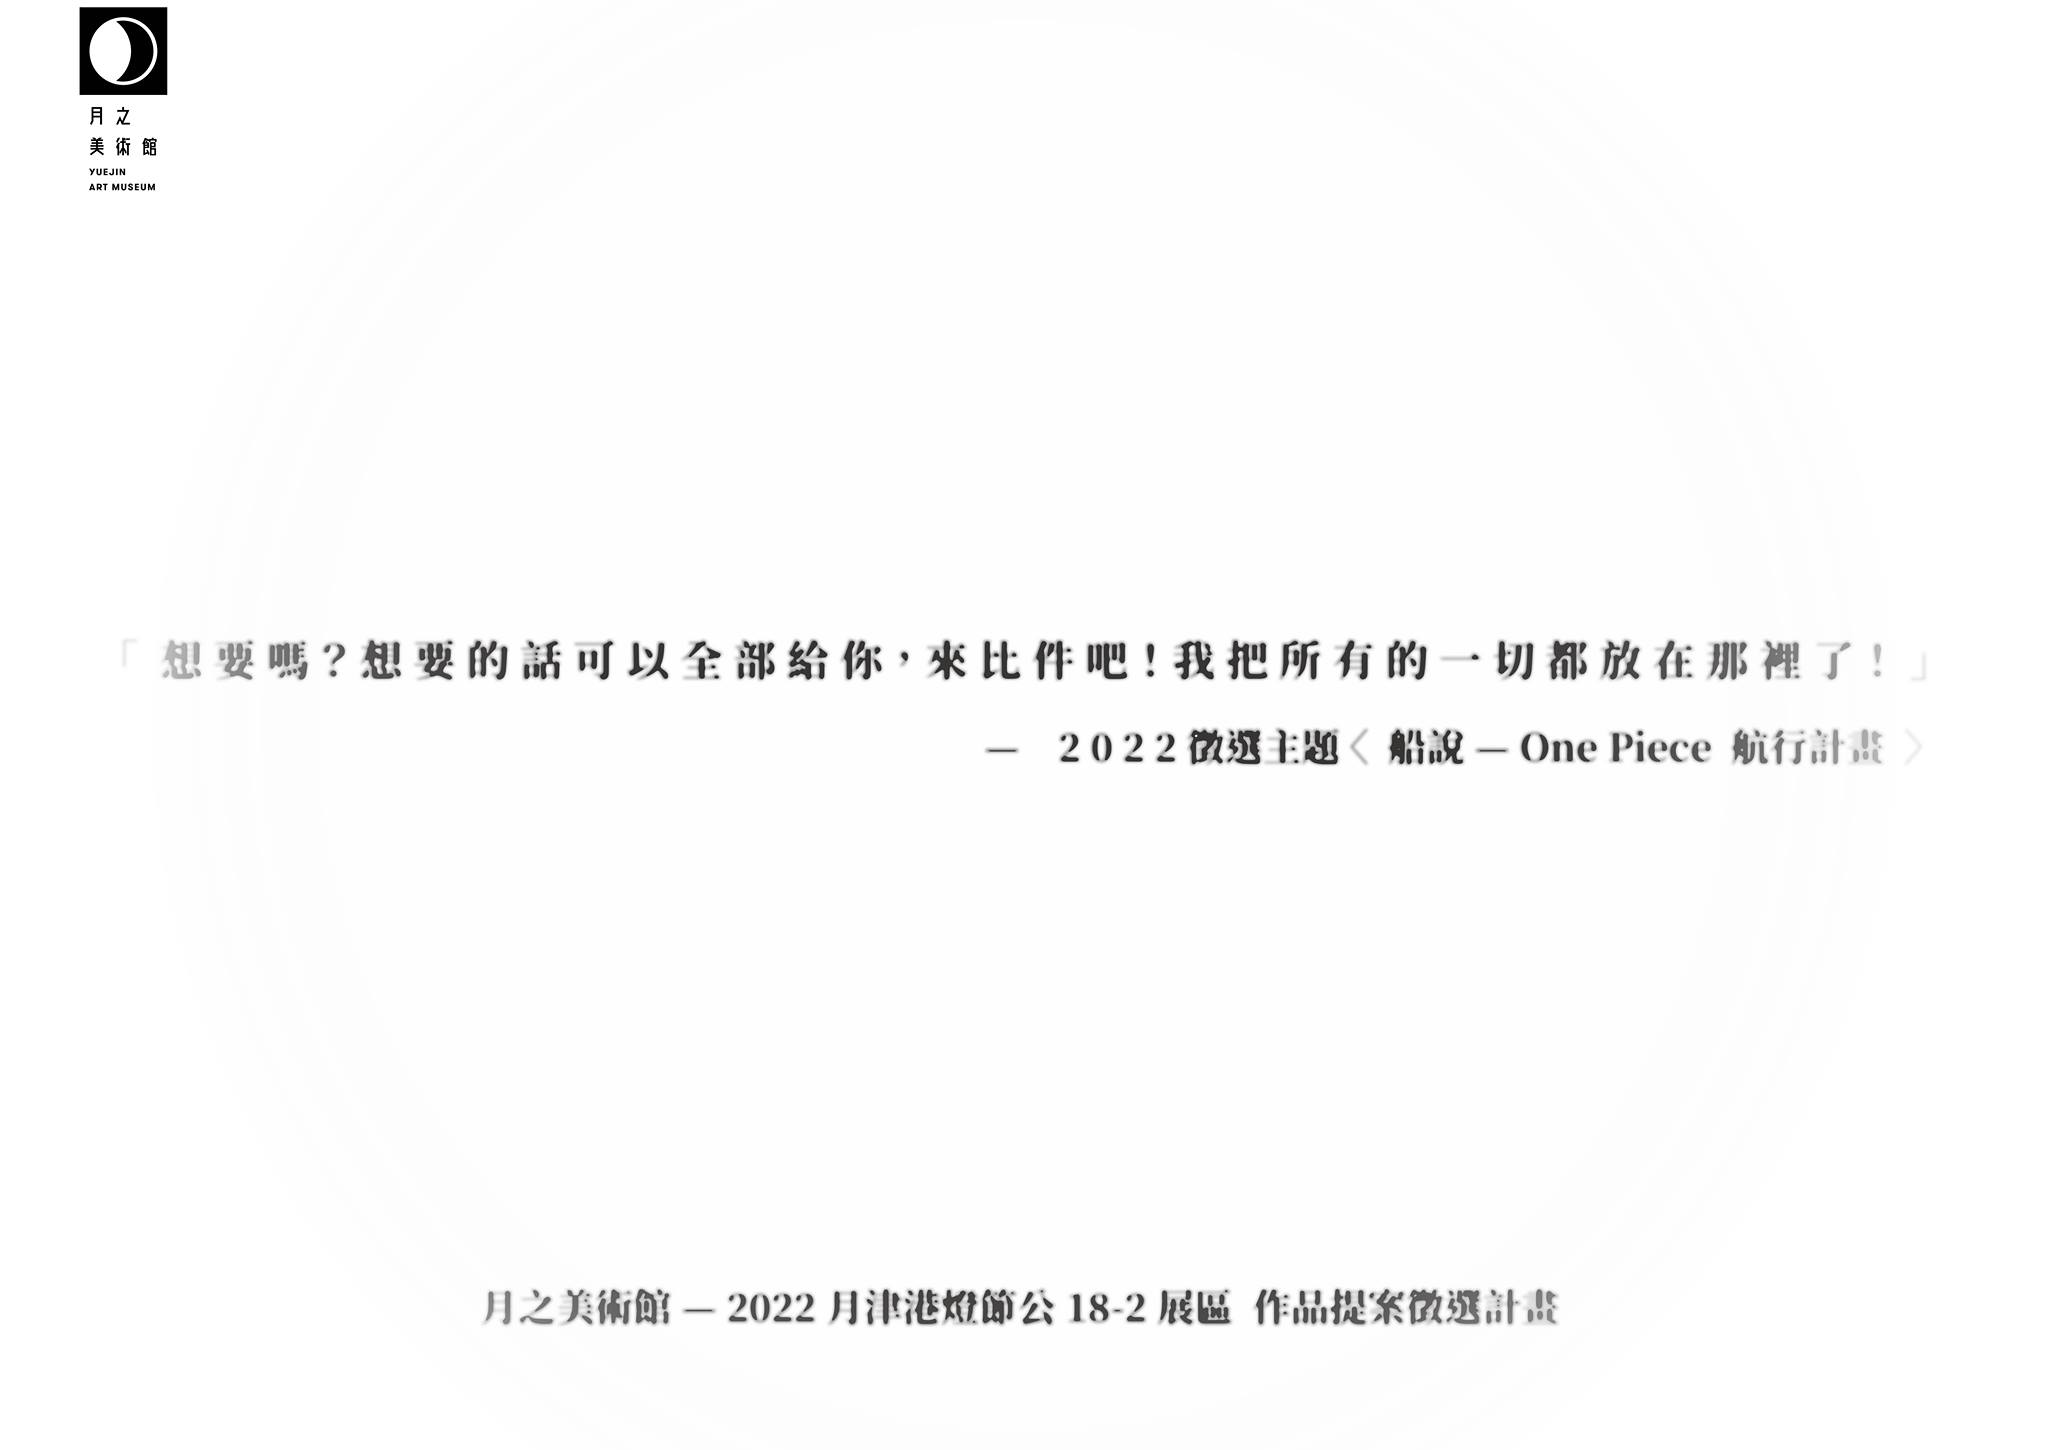 2022月津港燈節公18-2展區 作品提案徵選計畫 